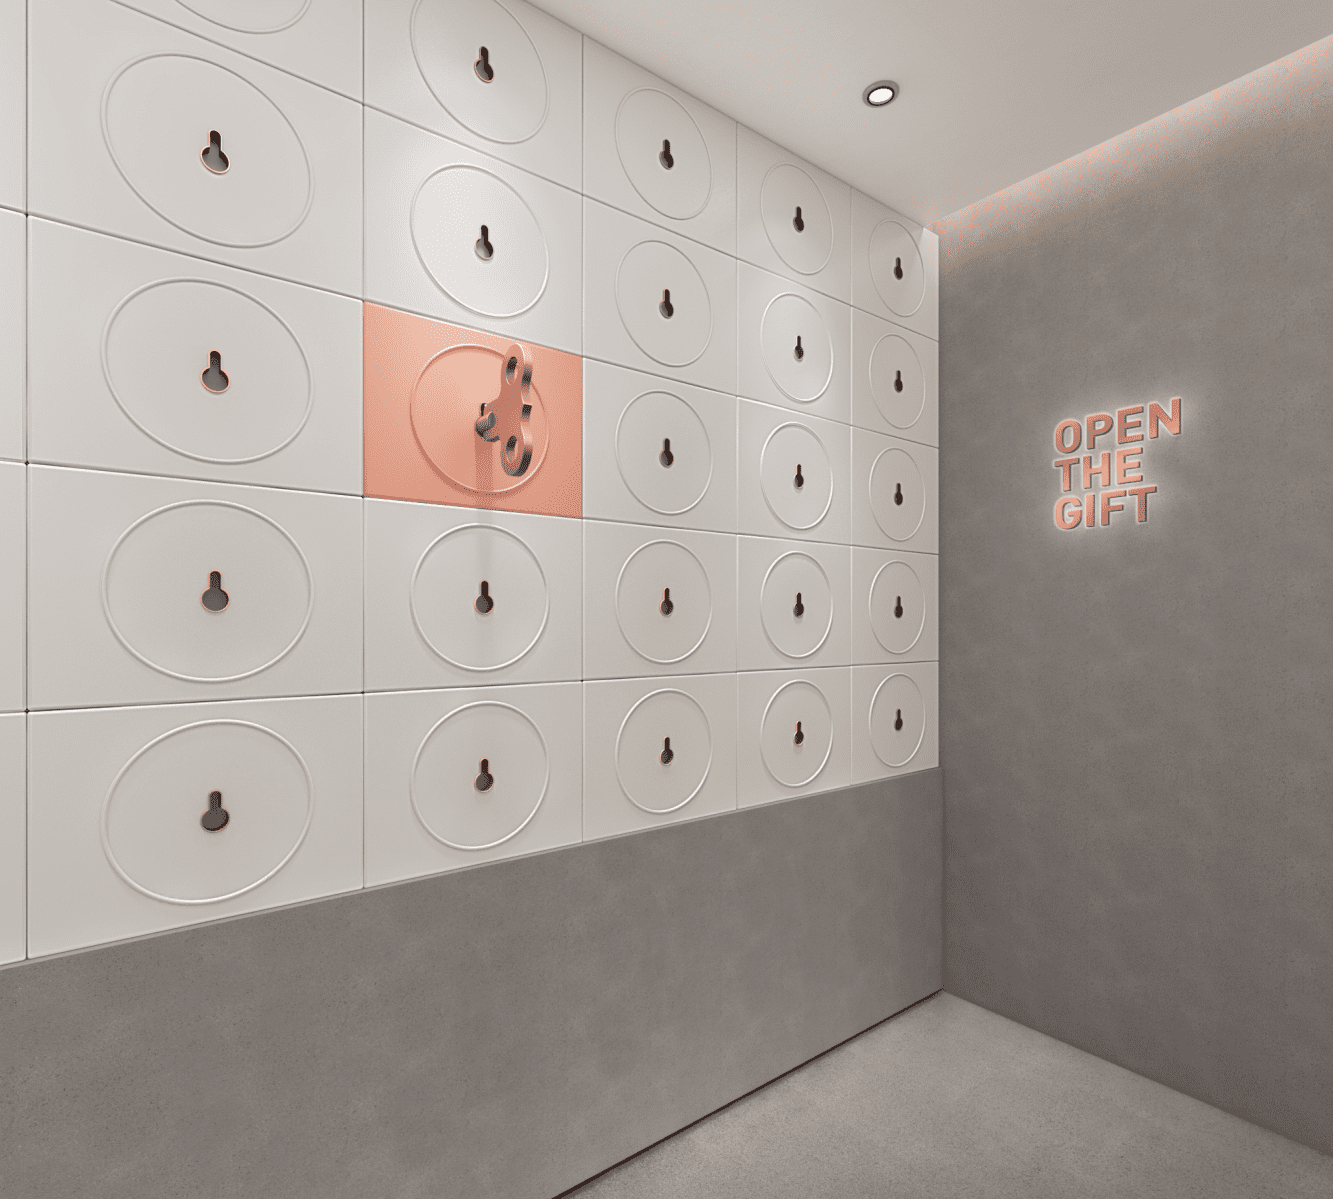 奈雪的茶连锁茶饮品牌店面空间设计